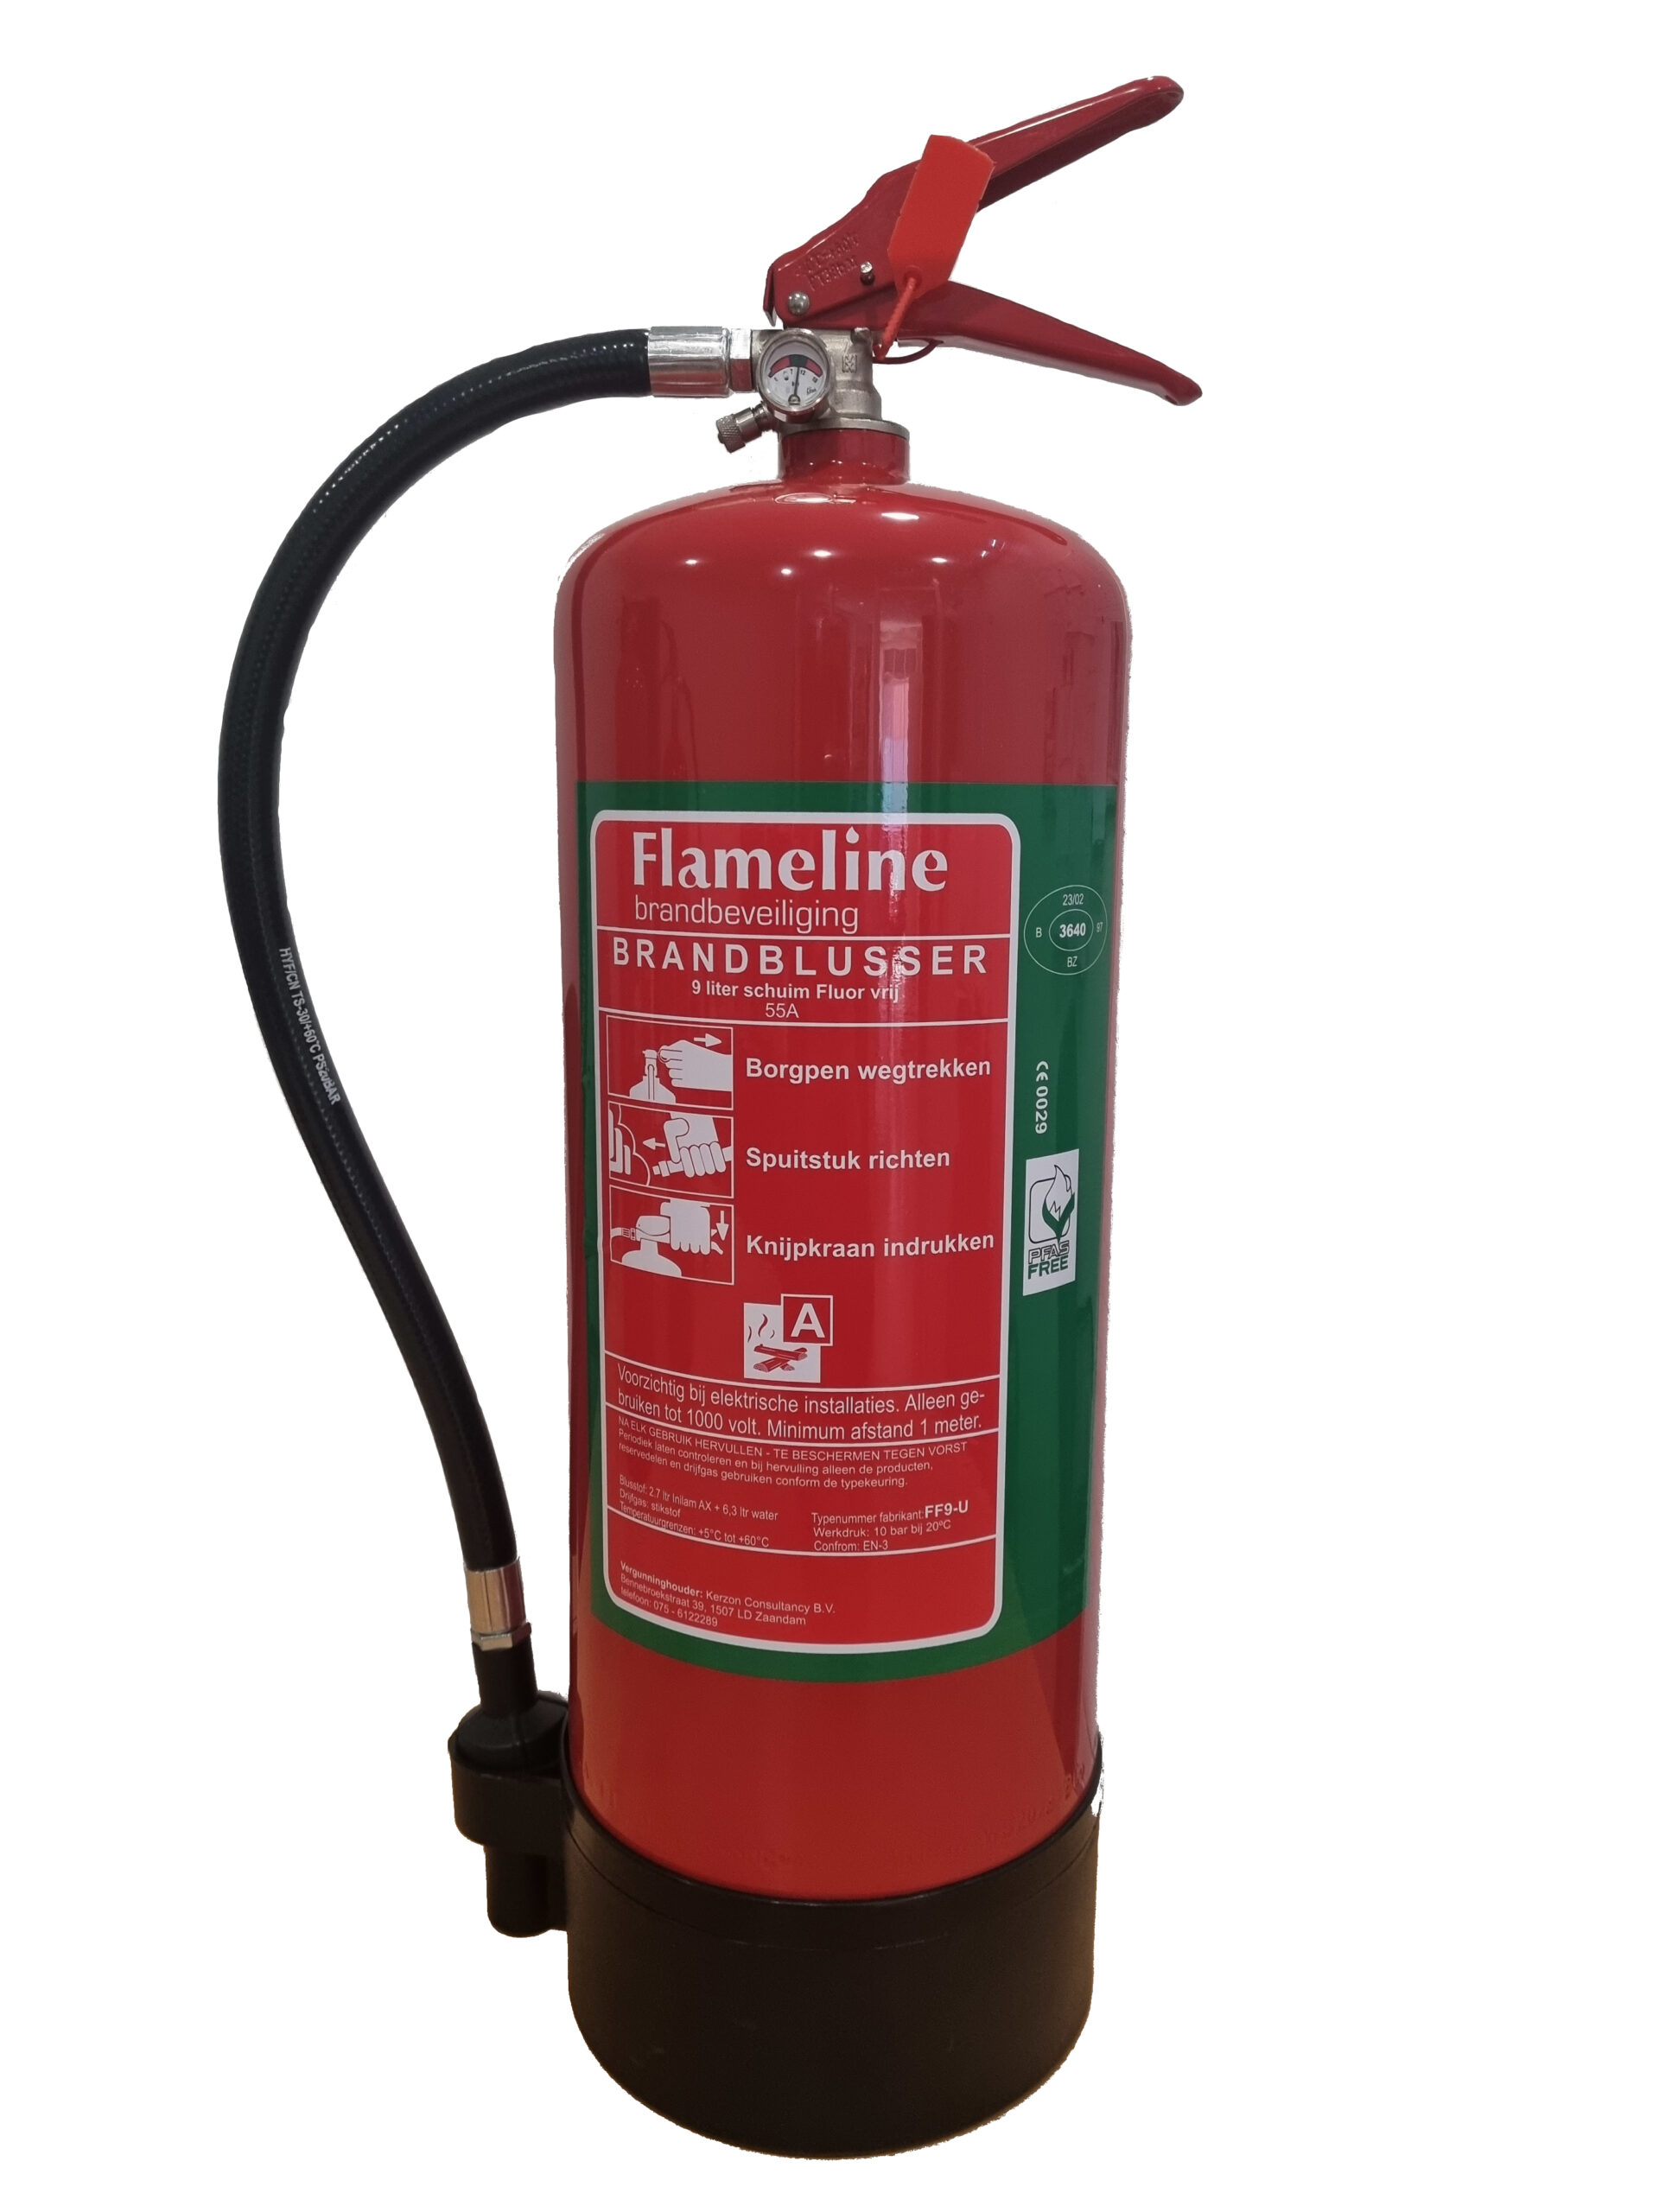 Flameline FF9U 9 liter schuimblusser FLUOR VRIJ 55A 